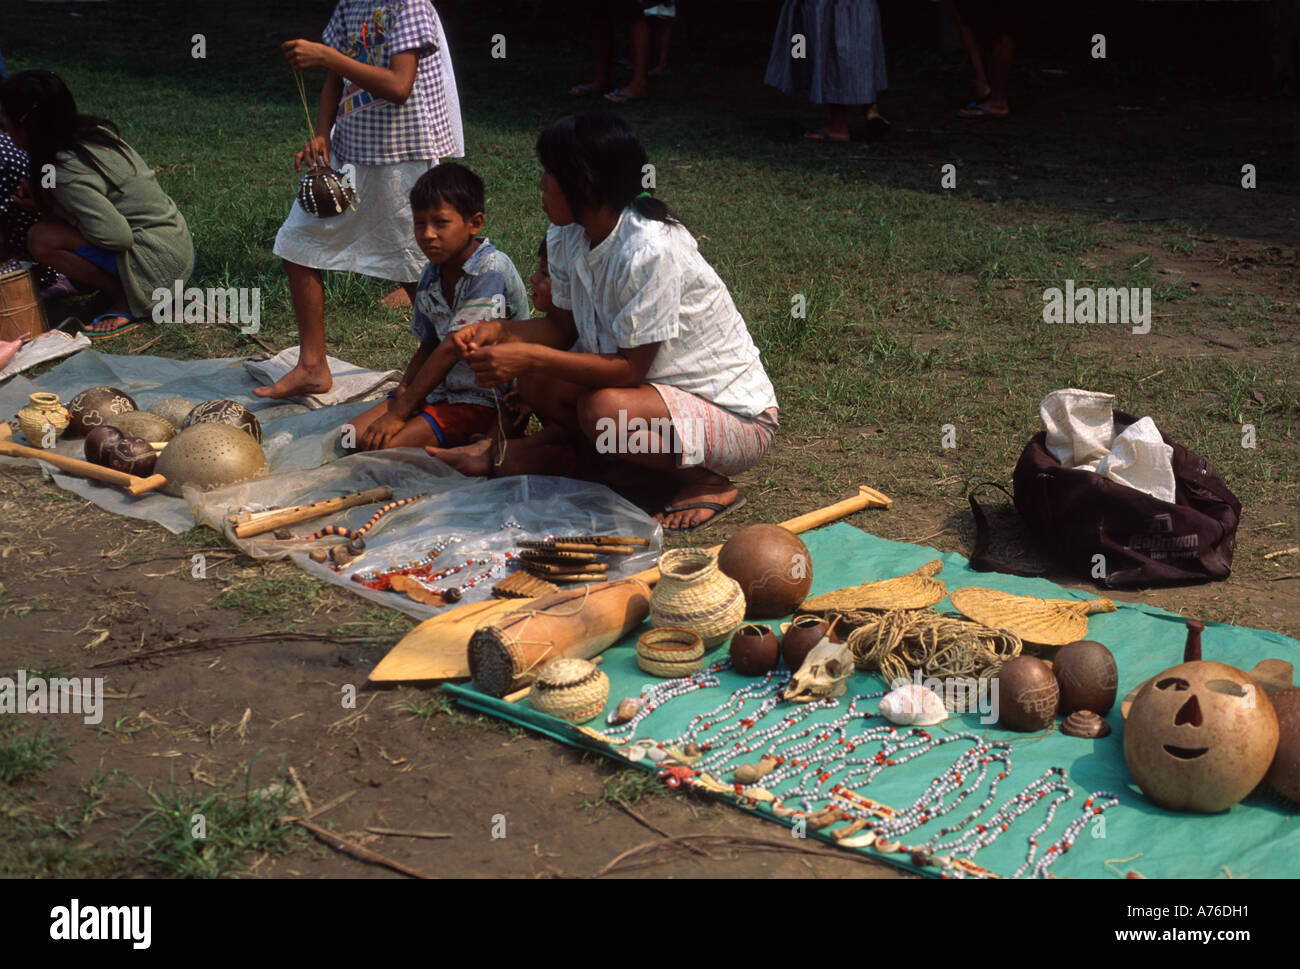 Schildkrötenpanzer, Mollusken, Schmuck, geschnitzten Paddel und Masken zum Verkauf von der lokalen Bevölkerung im Amazonasbecken Stockfoto